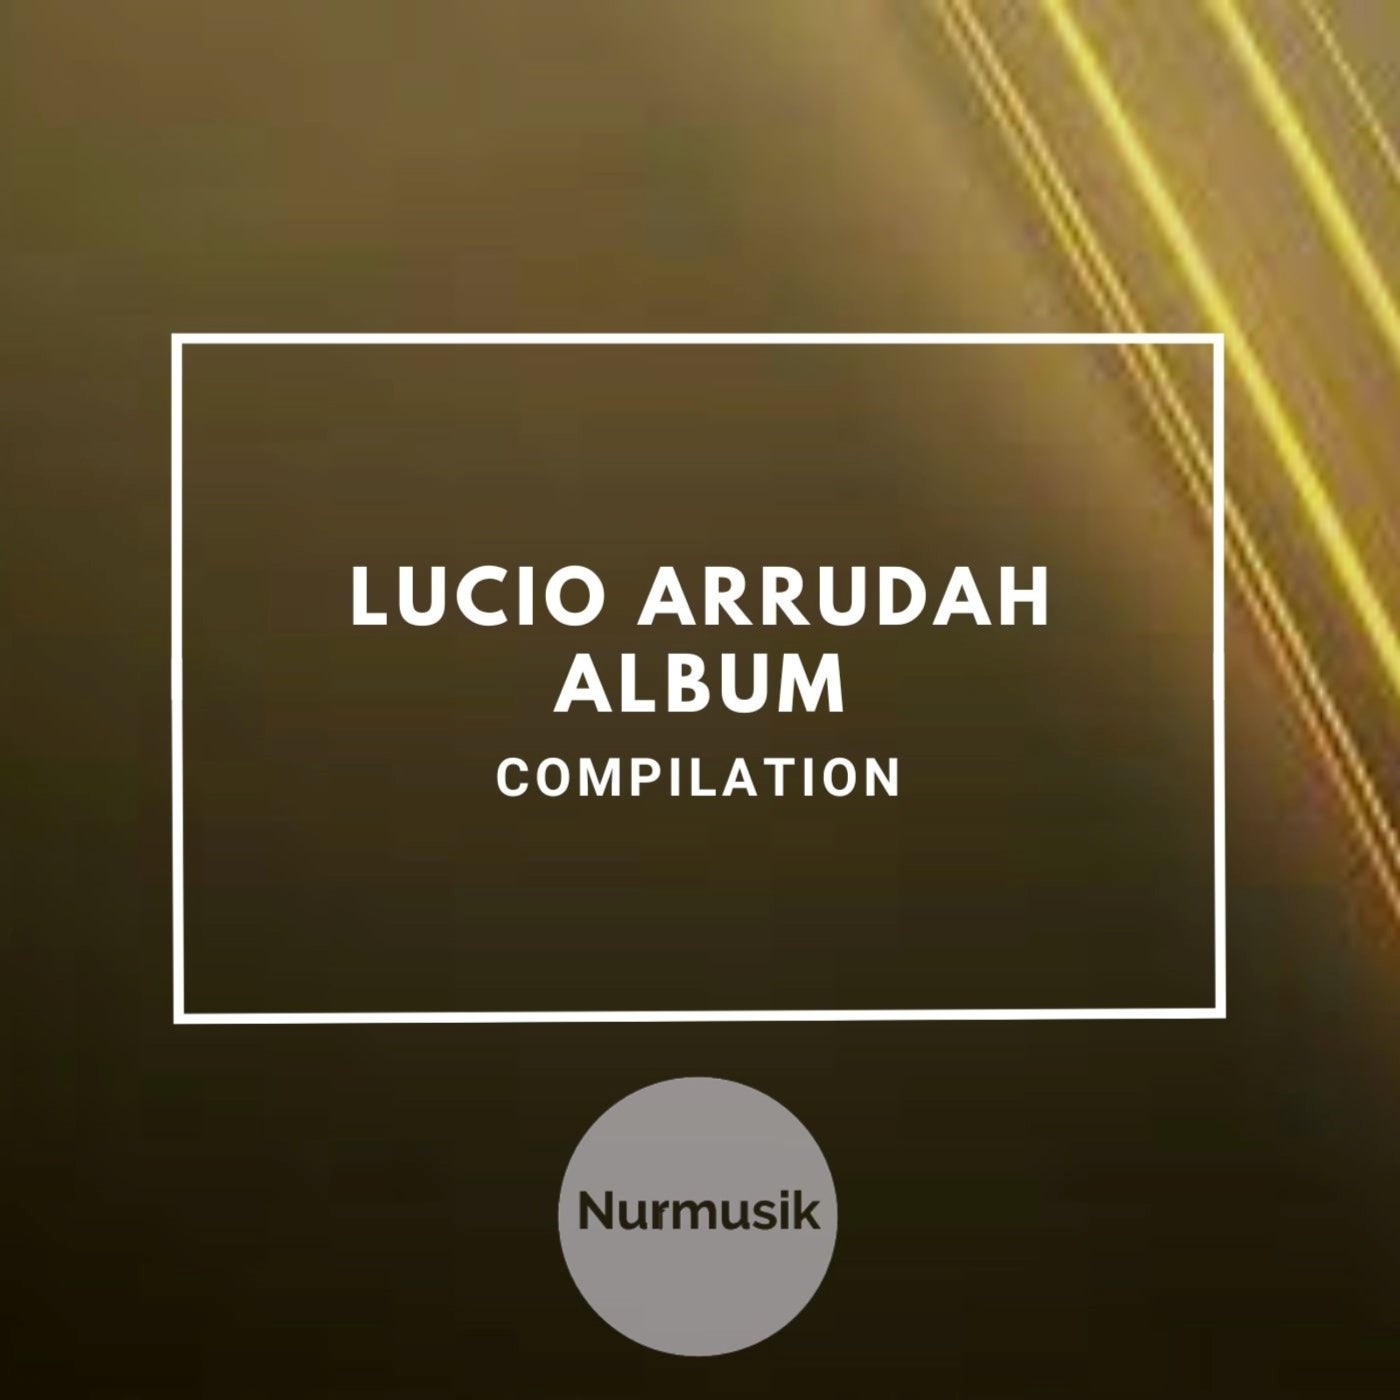 Lucio Arrudah Album